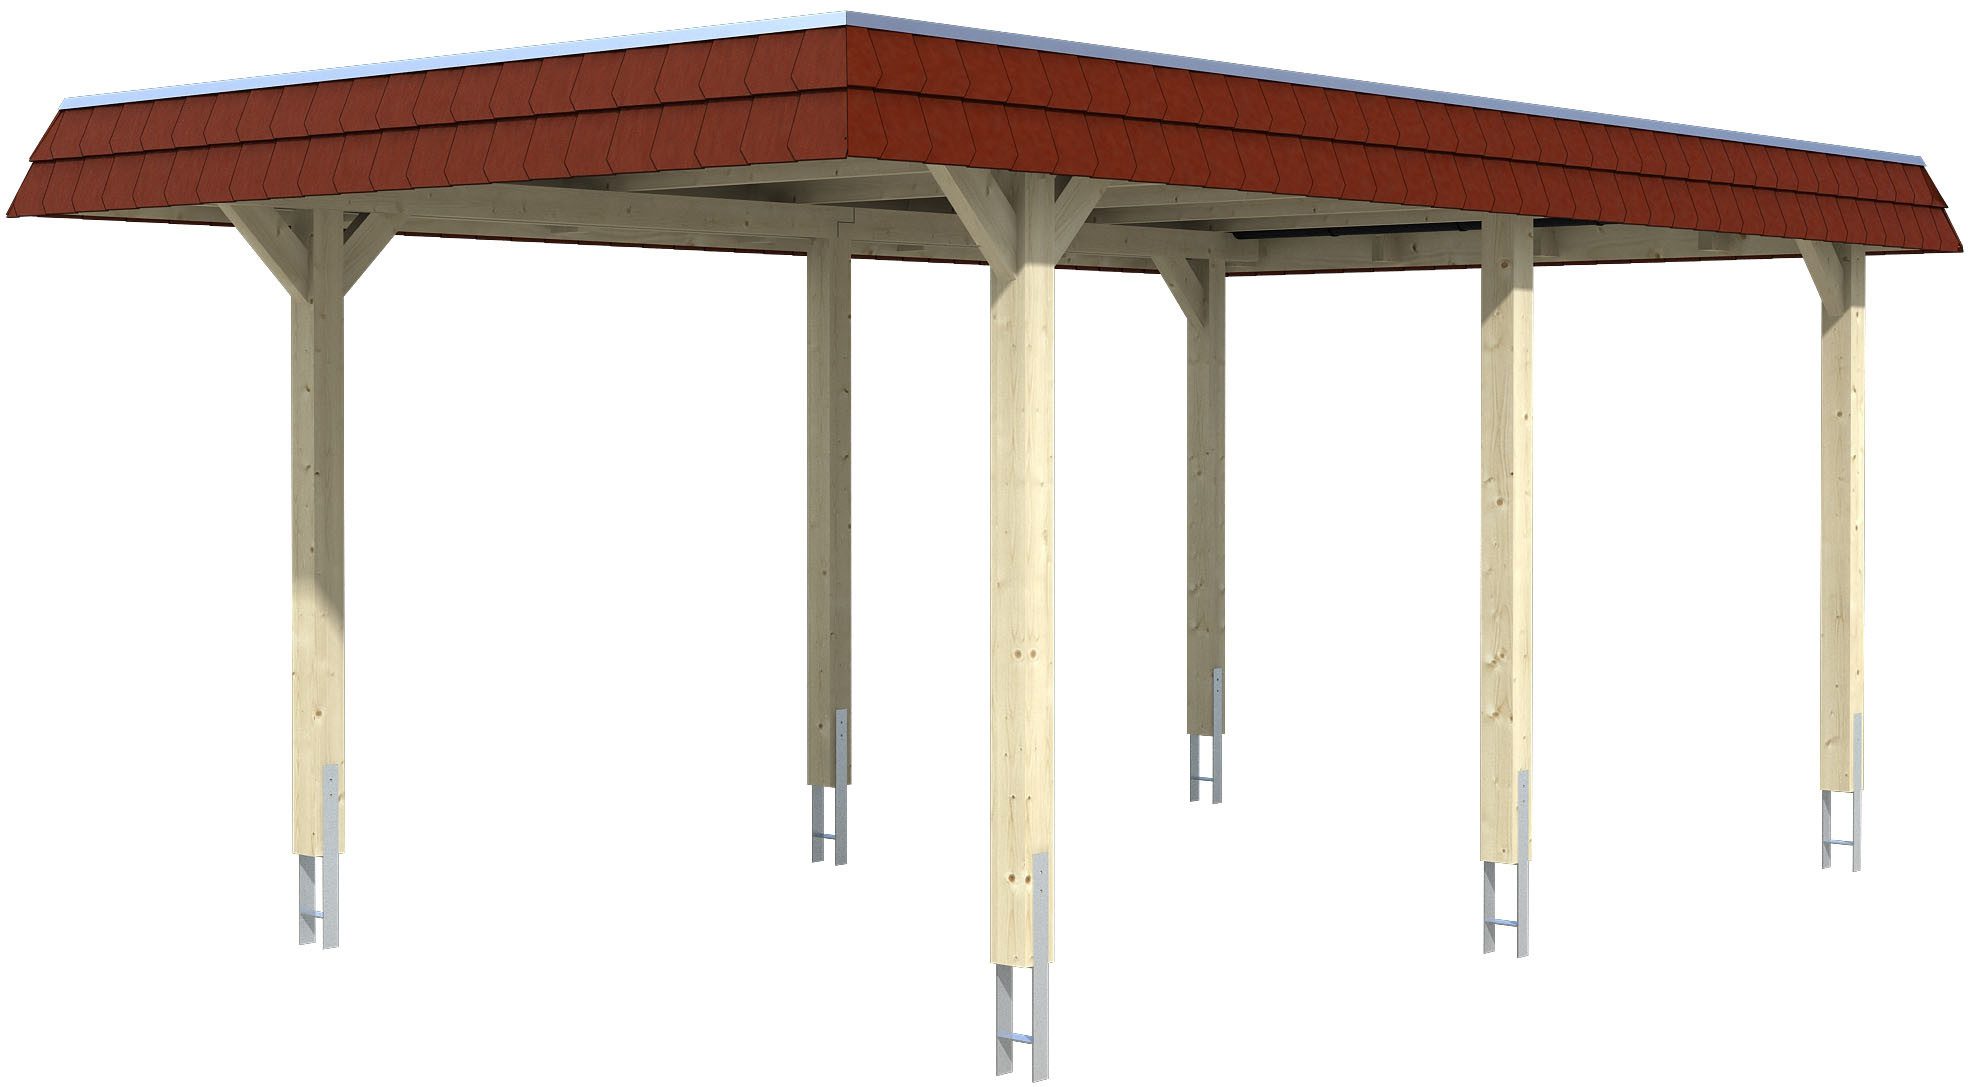 Skanholz Einzelcarport Wendland, BxT: 362x628 cm, 206 cm Einfahrtshöhe, mit EPDM-Dach, rote Blende